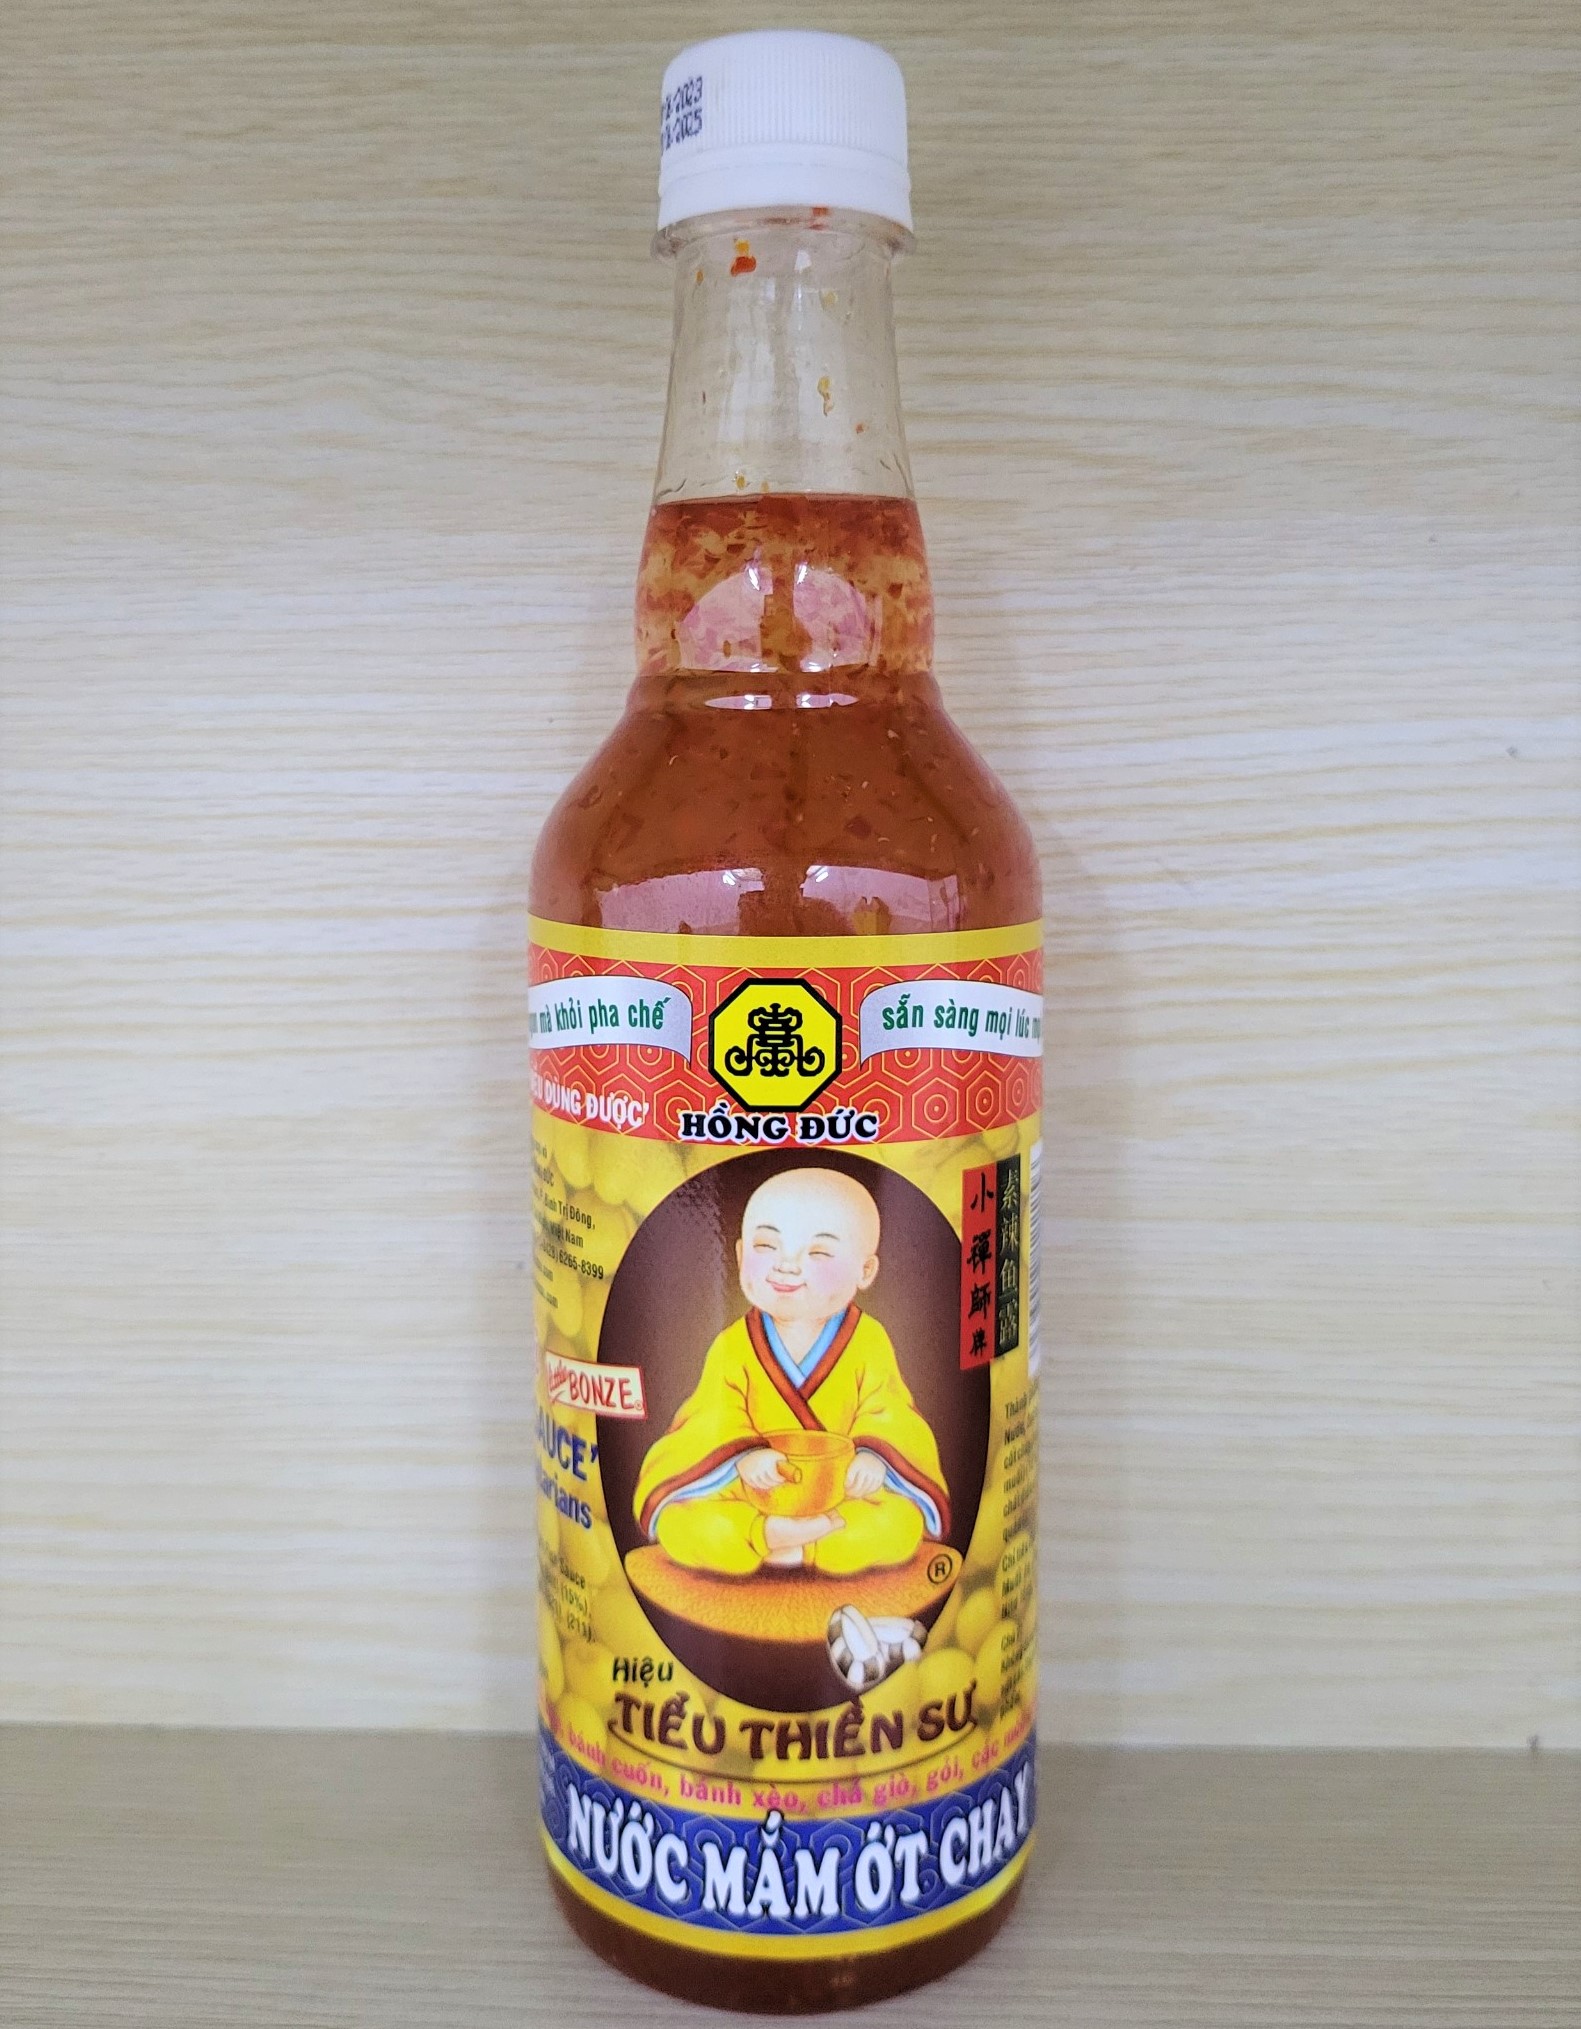 HỒNG ĐỨC Chai 500ml NƯỚC MẮM ỚT CHAY hiệu Tiểu Thiền Sư Chili Fish Sauce